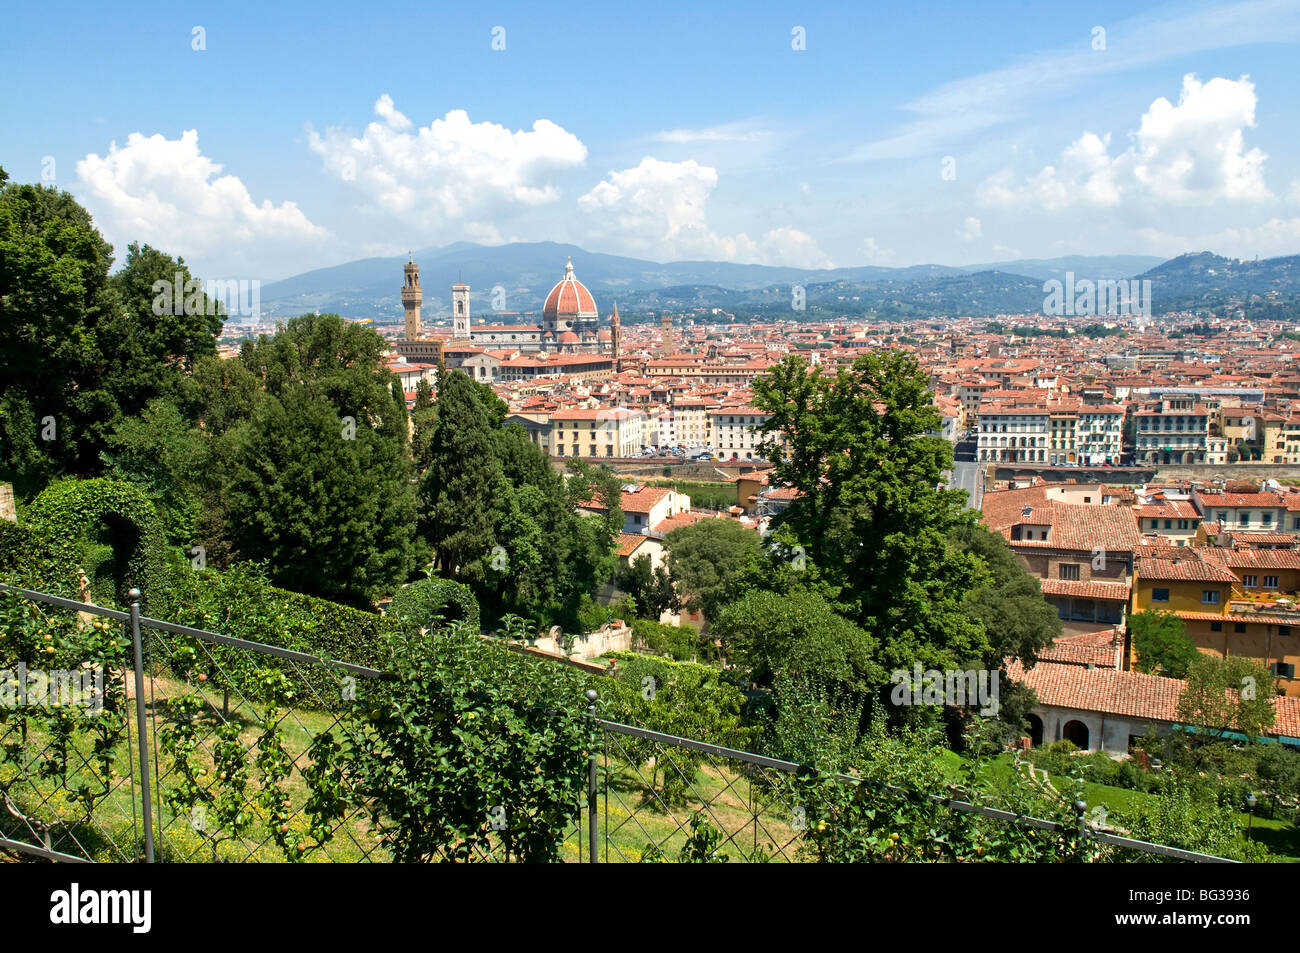 Vue panoramique sur Florence depuis le jardin Bardini, le jardin Bardini, Florence (Firenze), Toscane, Italie, Europe Banque D'Images